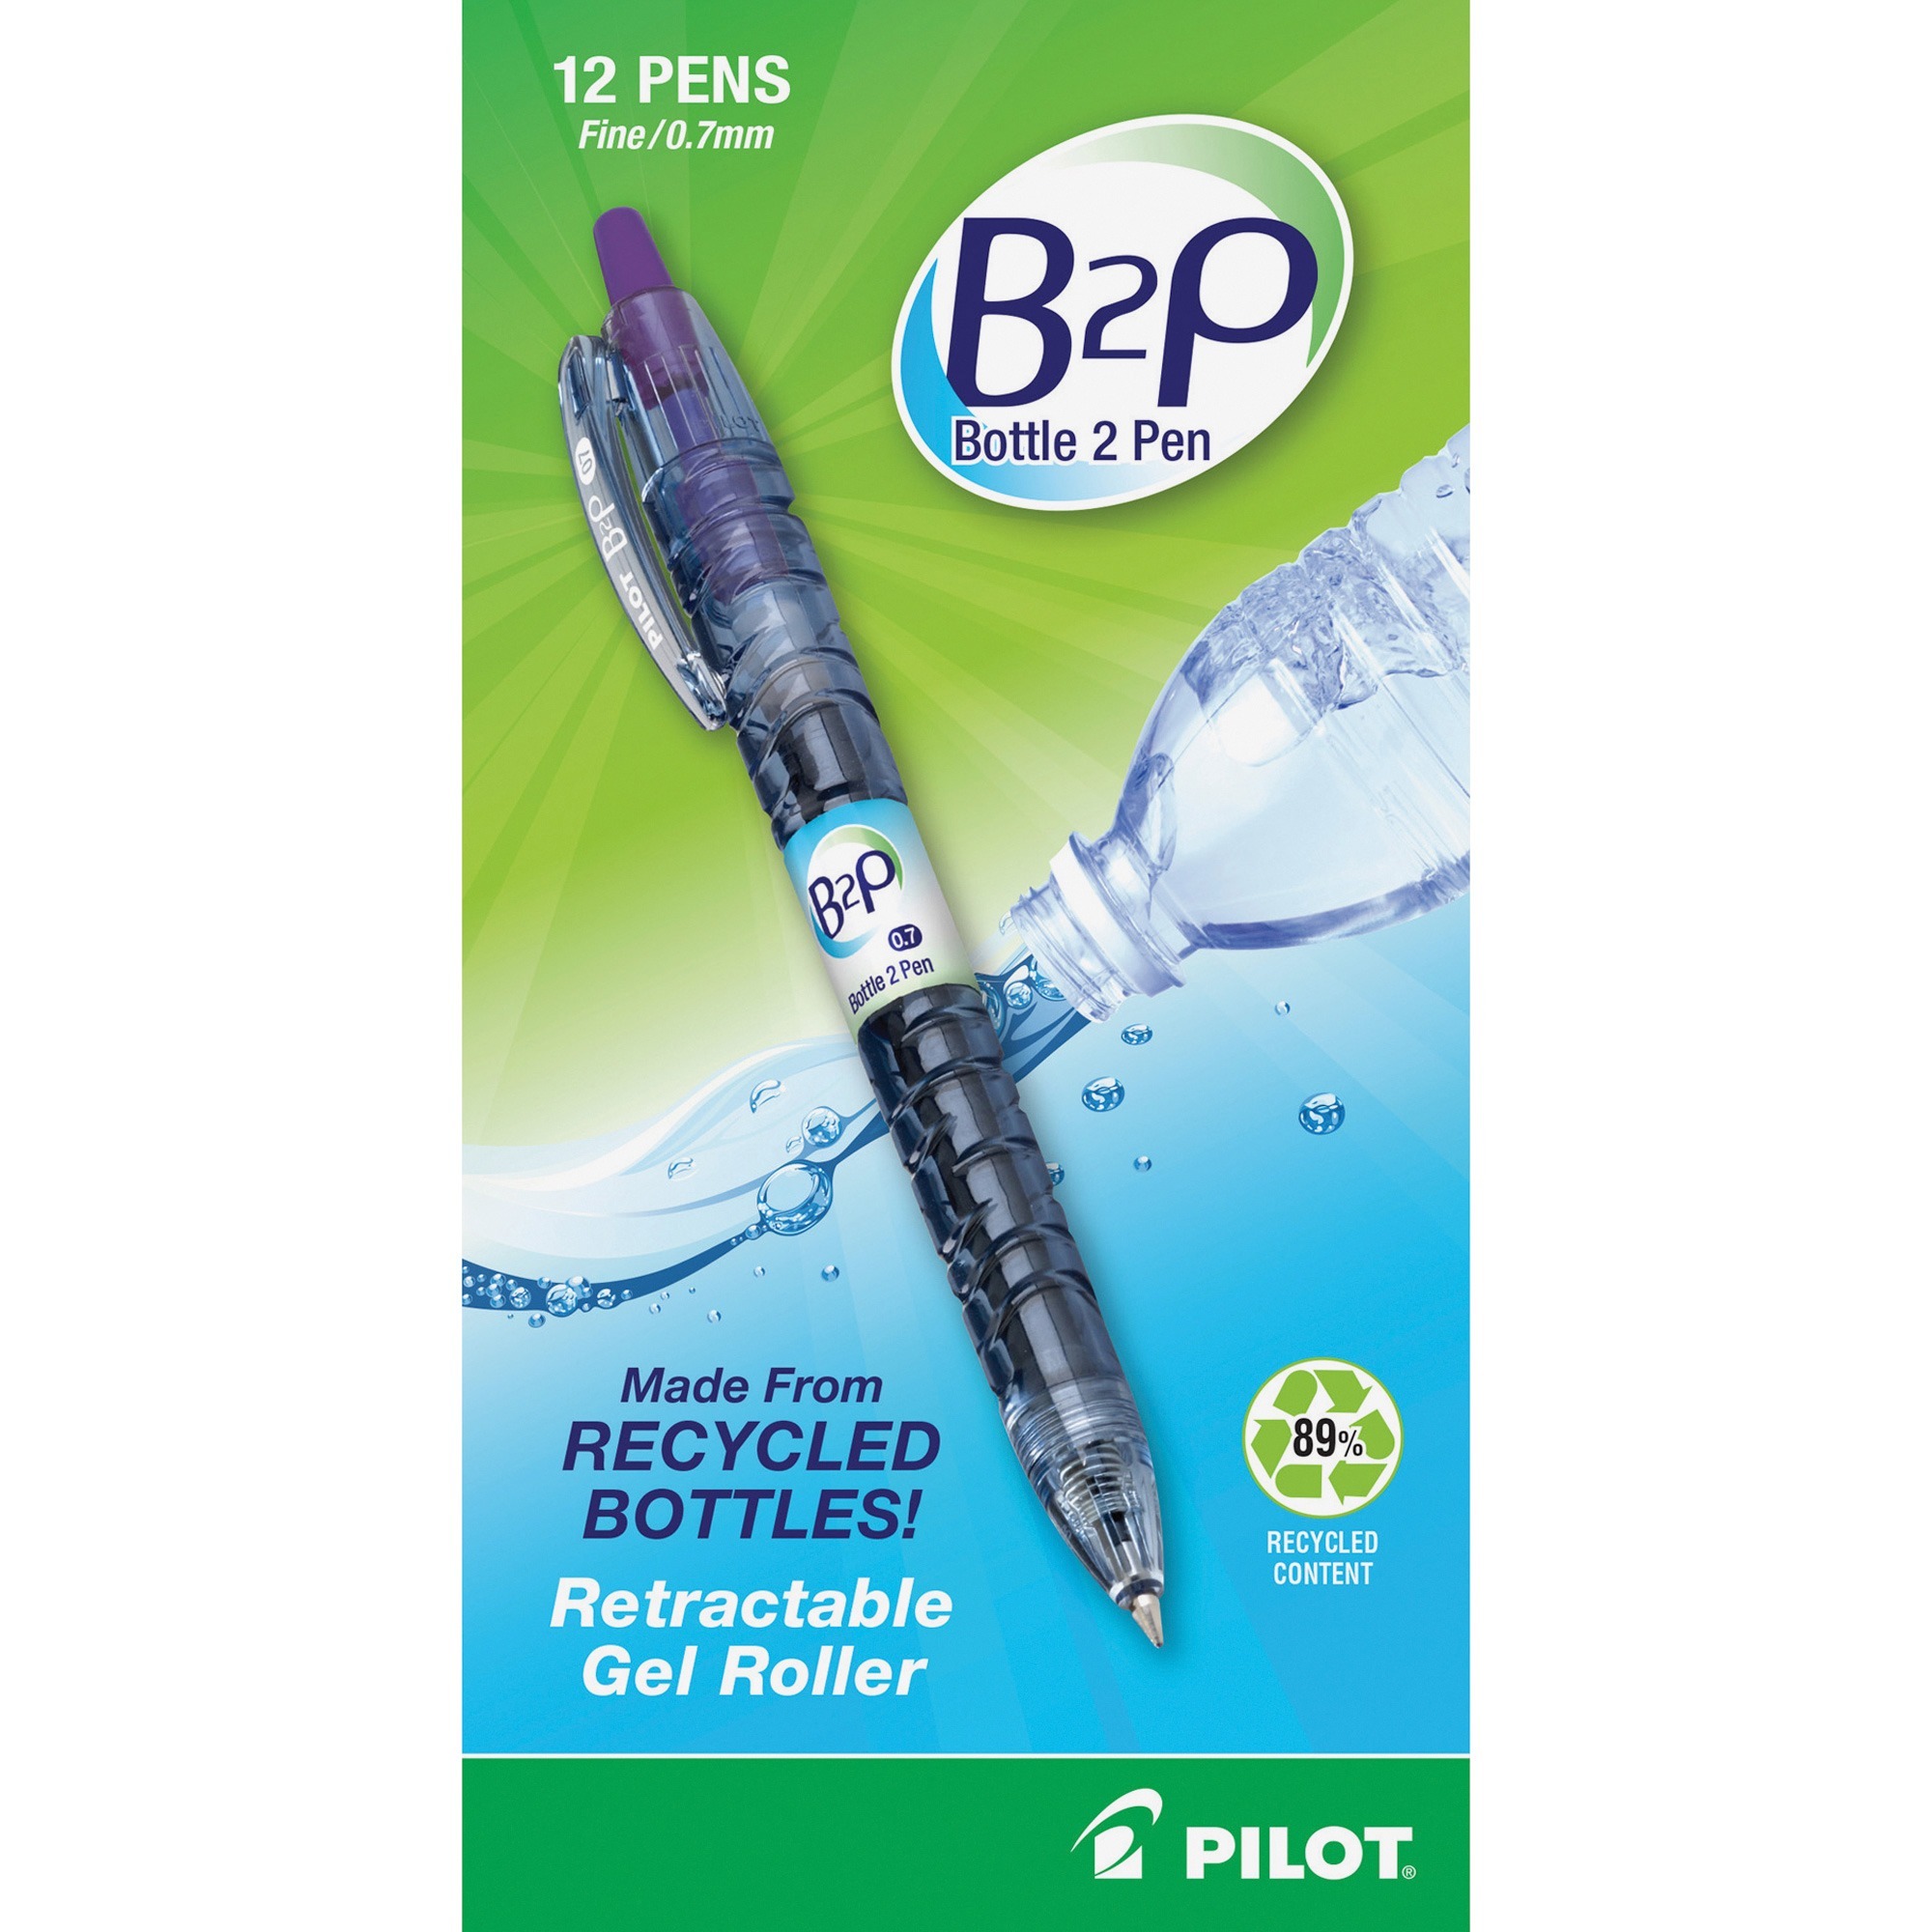 Lelix Felt Tip Pens, 60 Blue Pens, 0.7mm Medium Point Felt Pens, Felt Tip  Markers Pens for Journaling, Writing, Note Taking, Planner, Perfect for Art